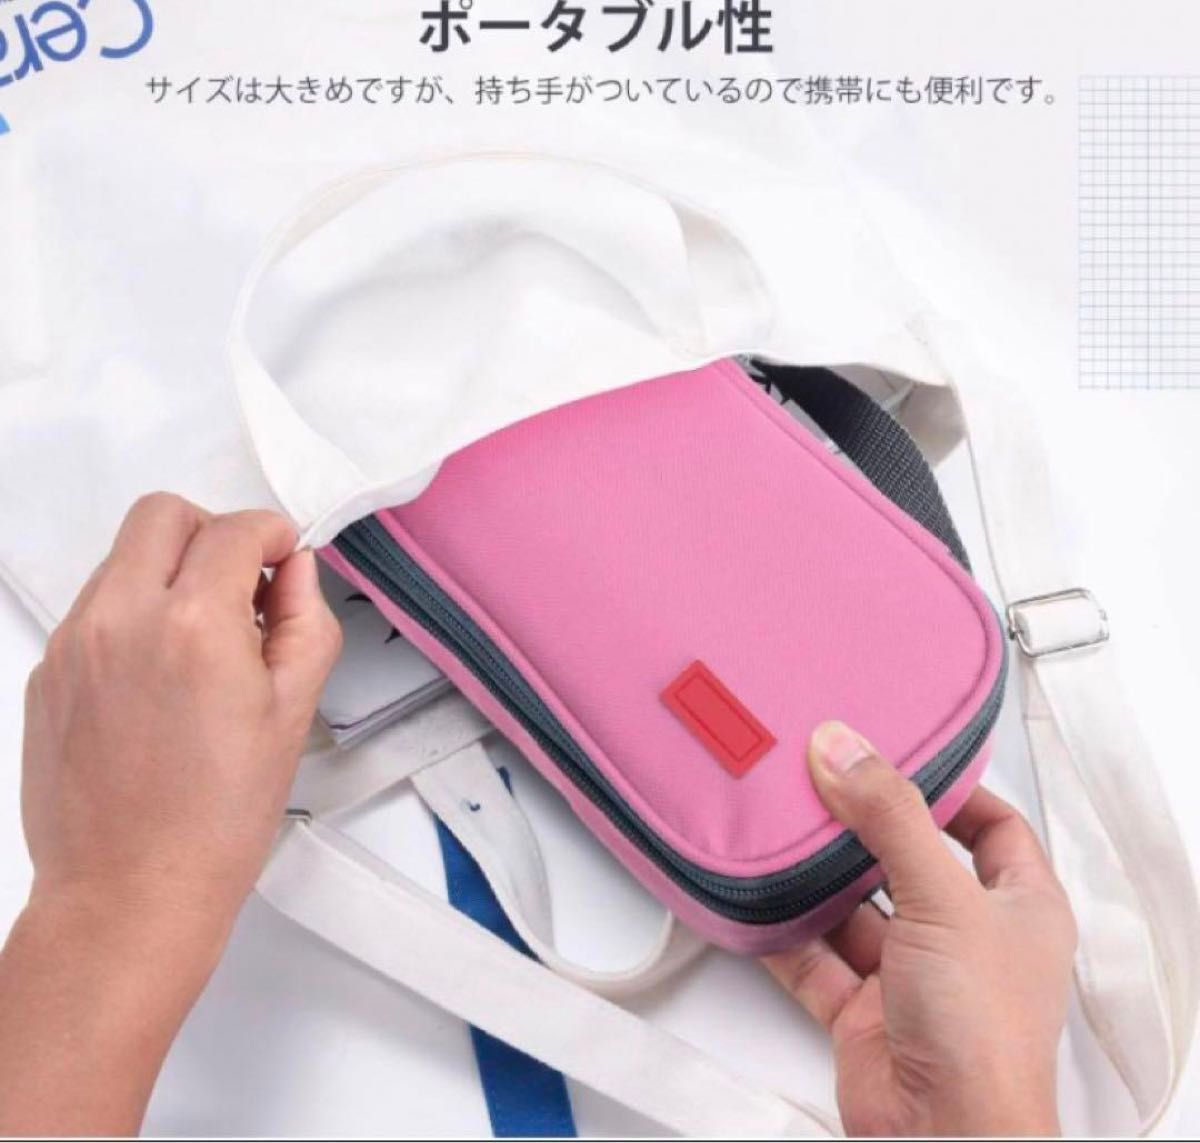 【早いもの勝ち】多機能ペンケース 大容量 シンプル 筆箱 ピンク 入学祝い